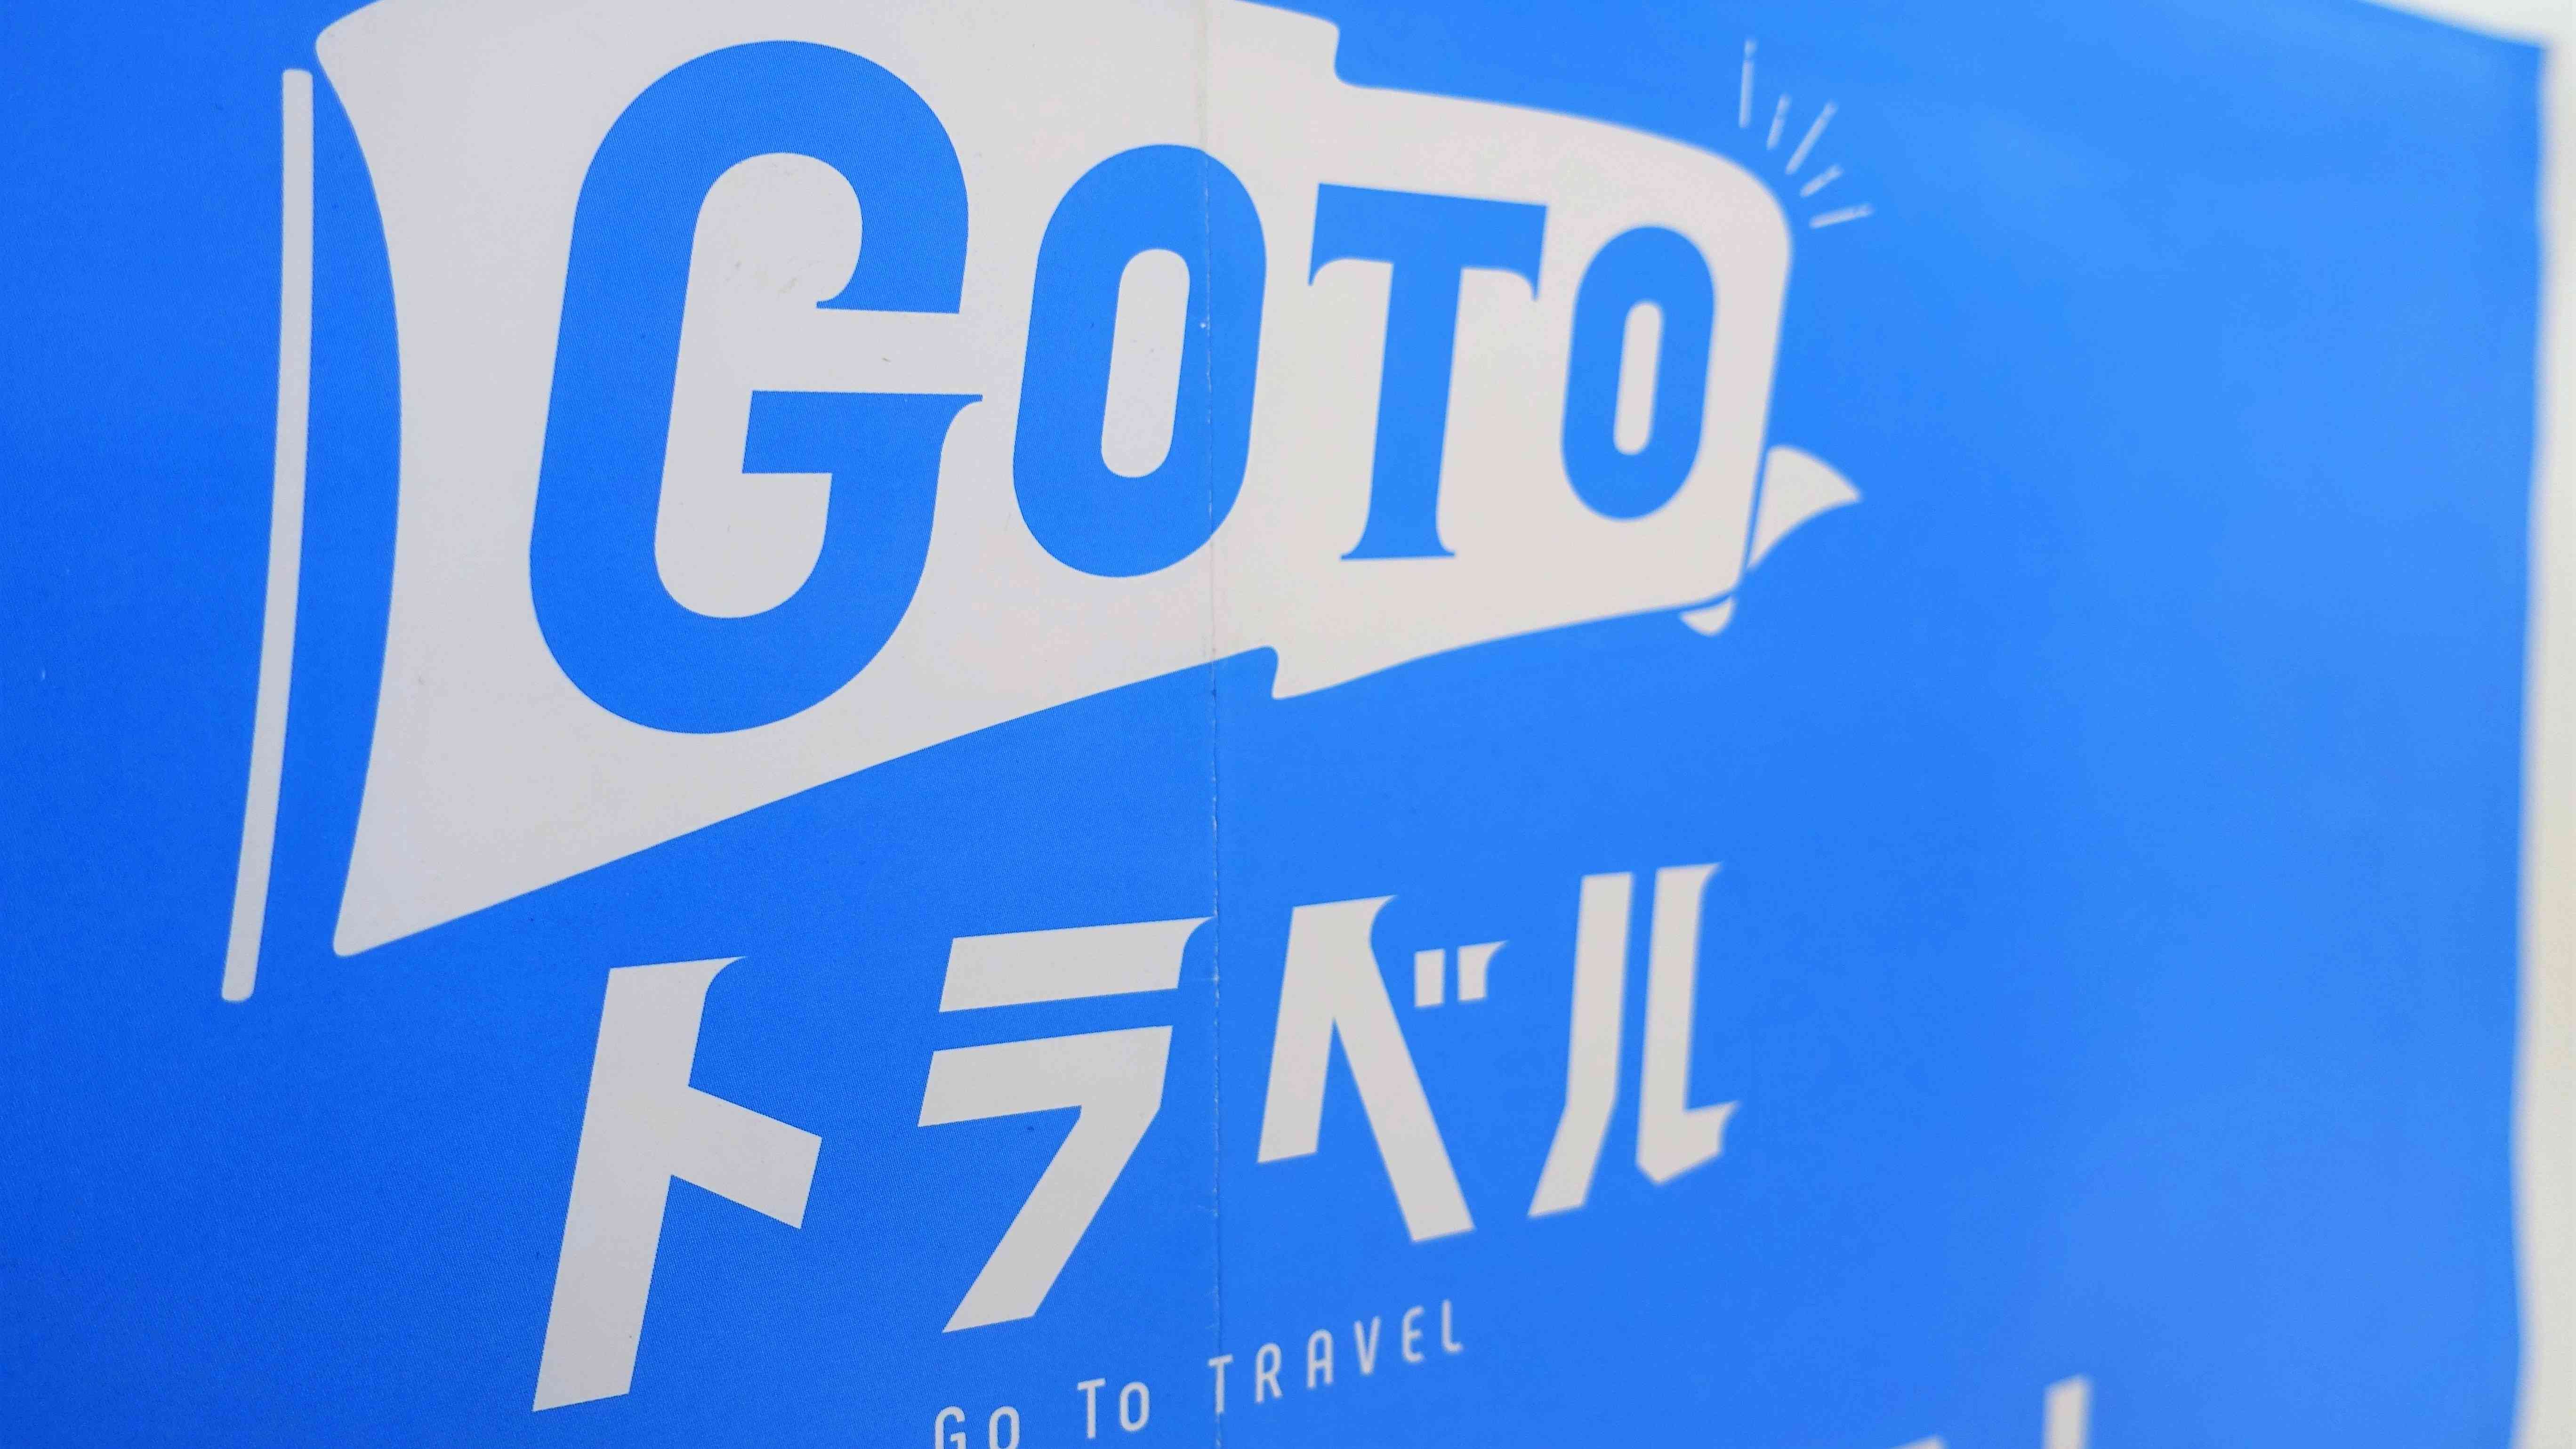 相次ぐ｢GoTo不正｣で浮き彫りとなった深すぎる闇 ネット旅行社で浮上､HIS事件との共通点も散見 | レジャー・観光・ホテル | 東洋経済オンライン